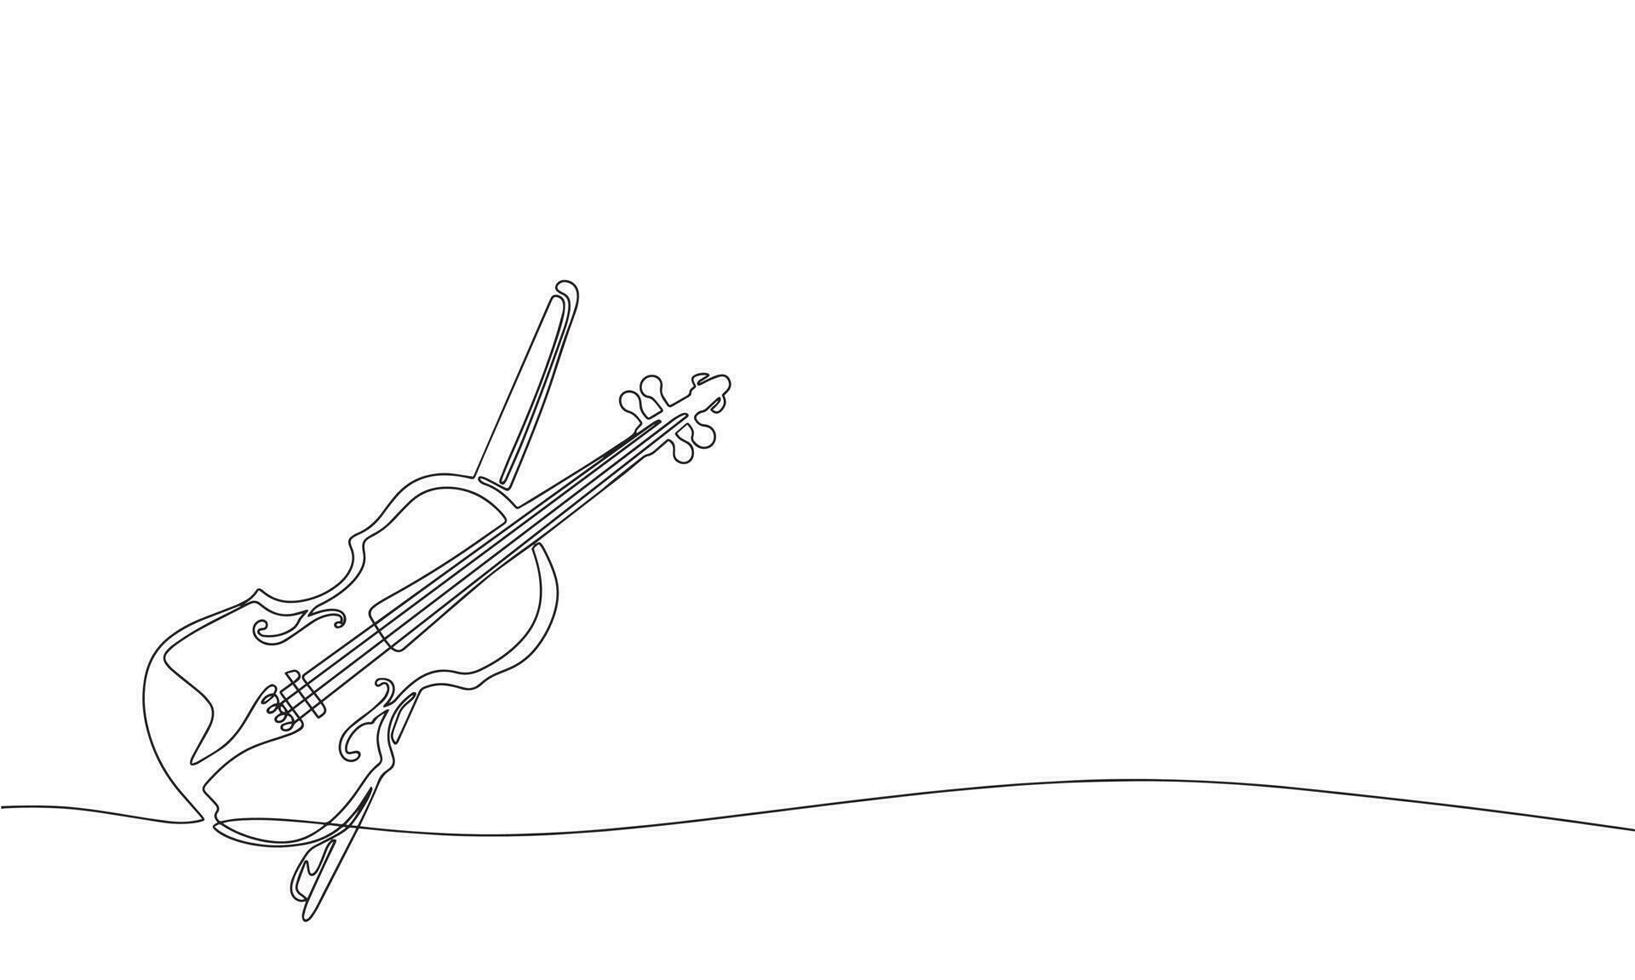 Violine und Bogen. einer Linie kontinuierlich abstrakt Konzeption von Musical Instrument. Linie Kunst, Umriss, Silhouette, Vektor Illustration.